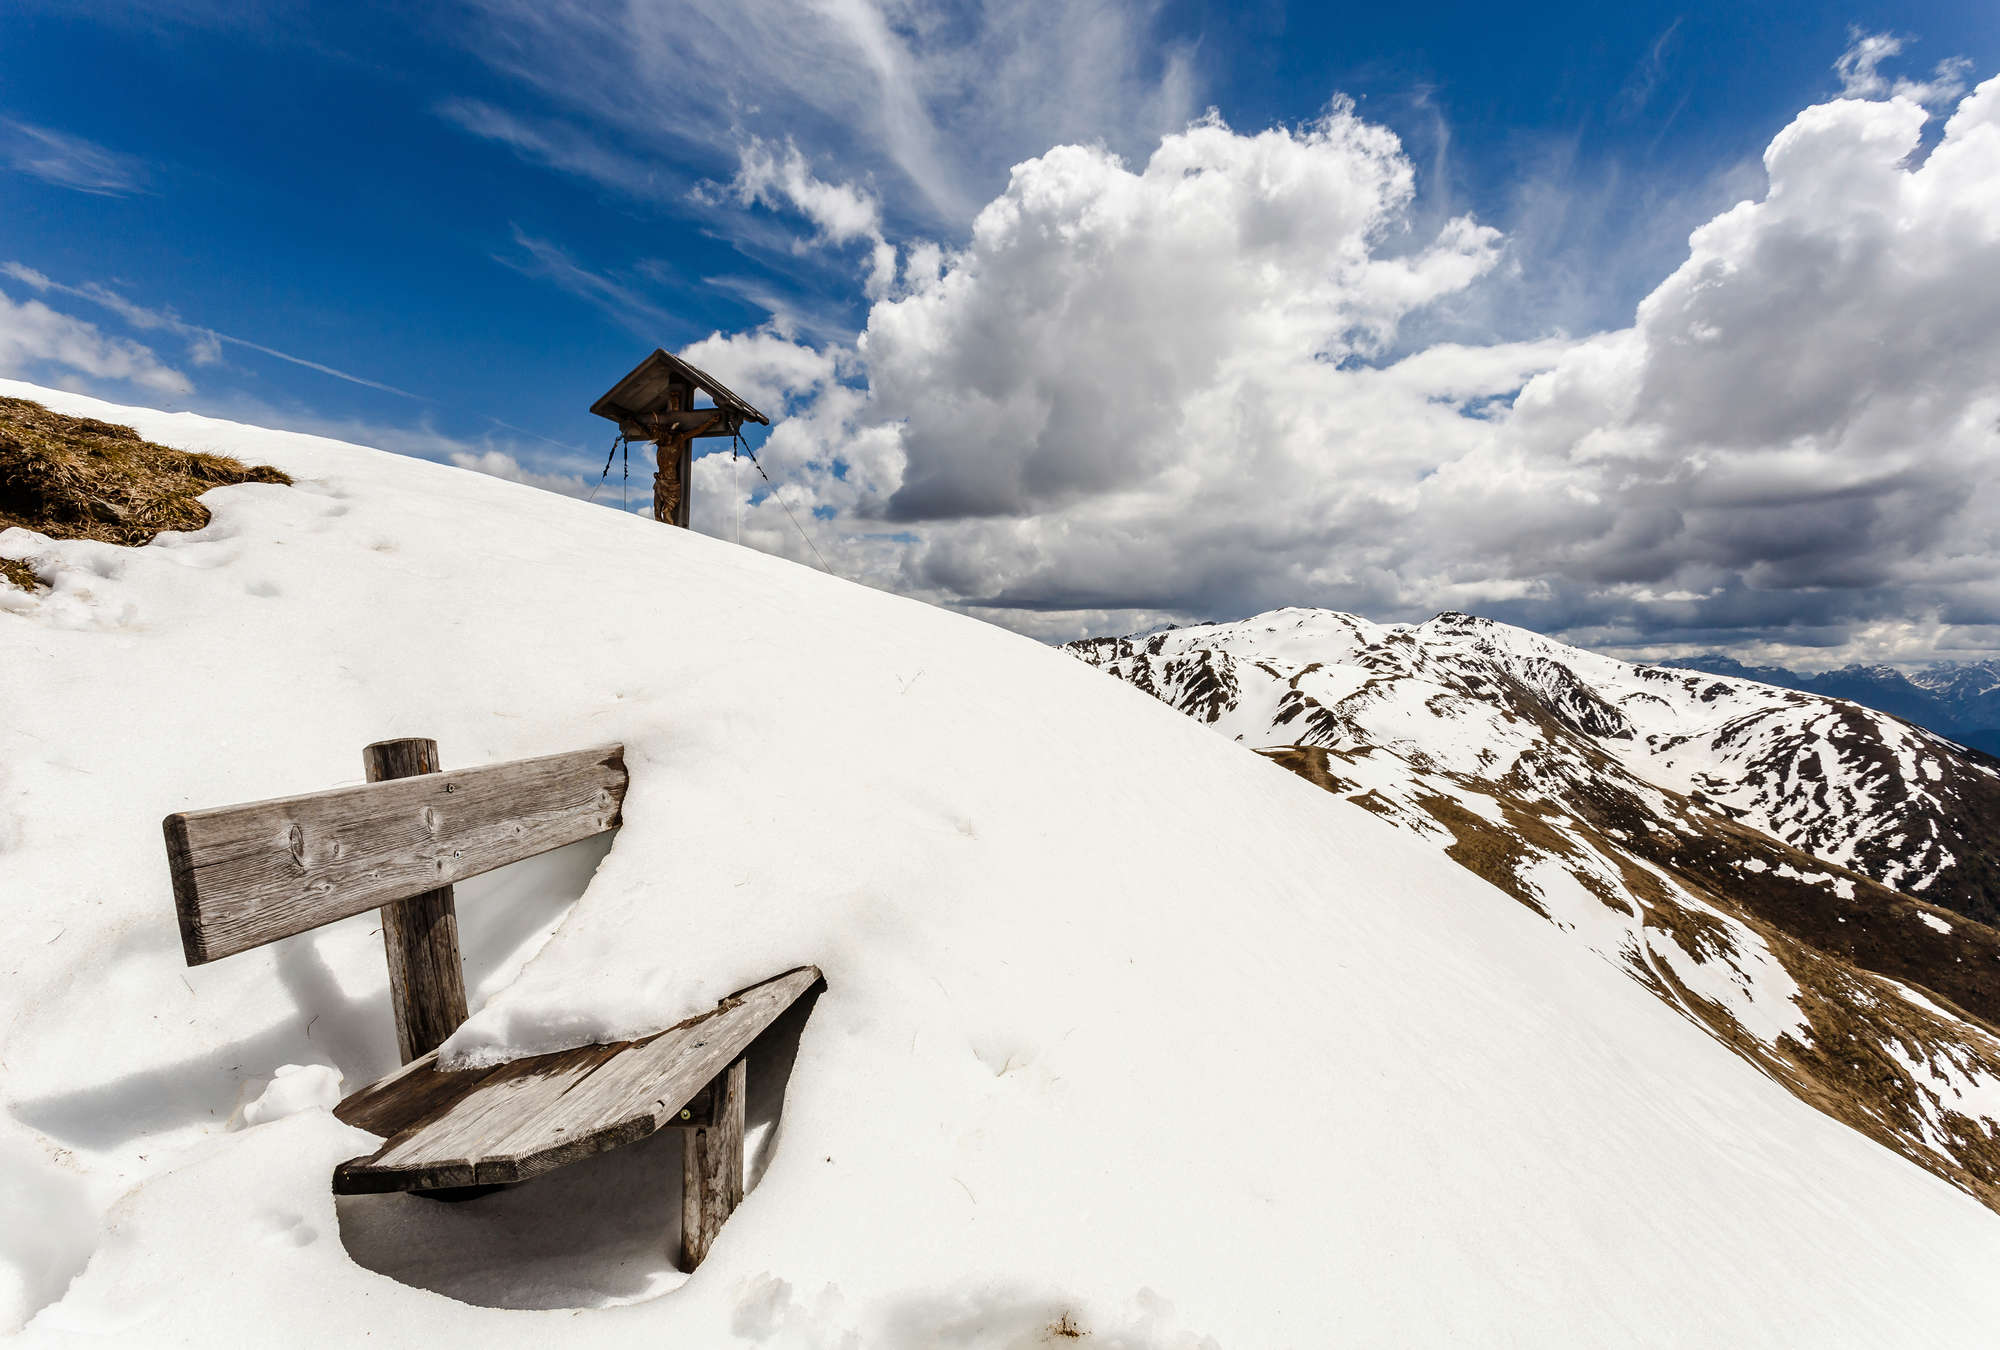             Fotomurali Paesaggio invernale in montagna - Banco di neve
        